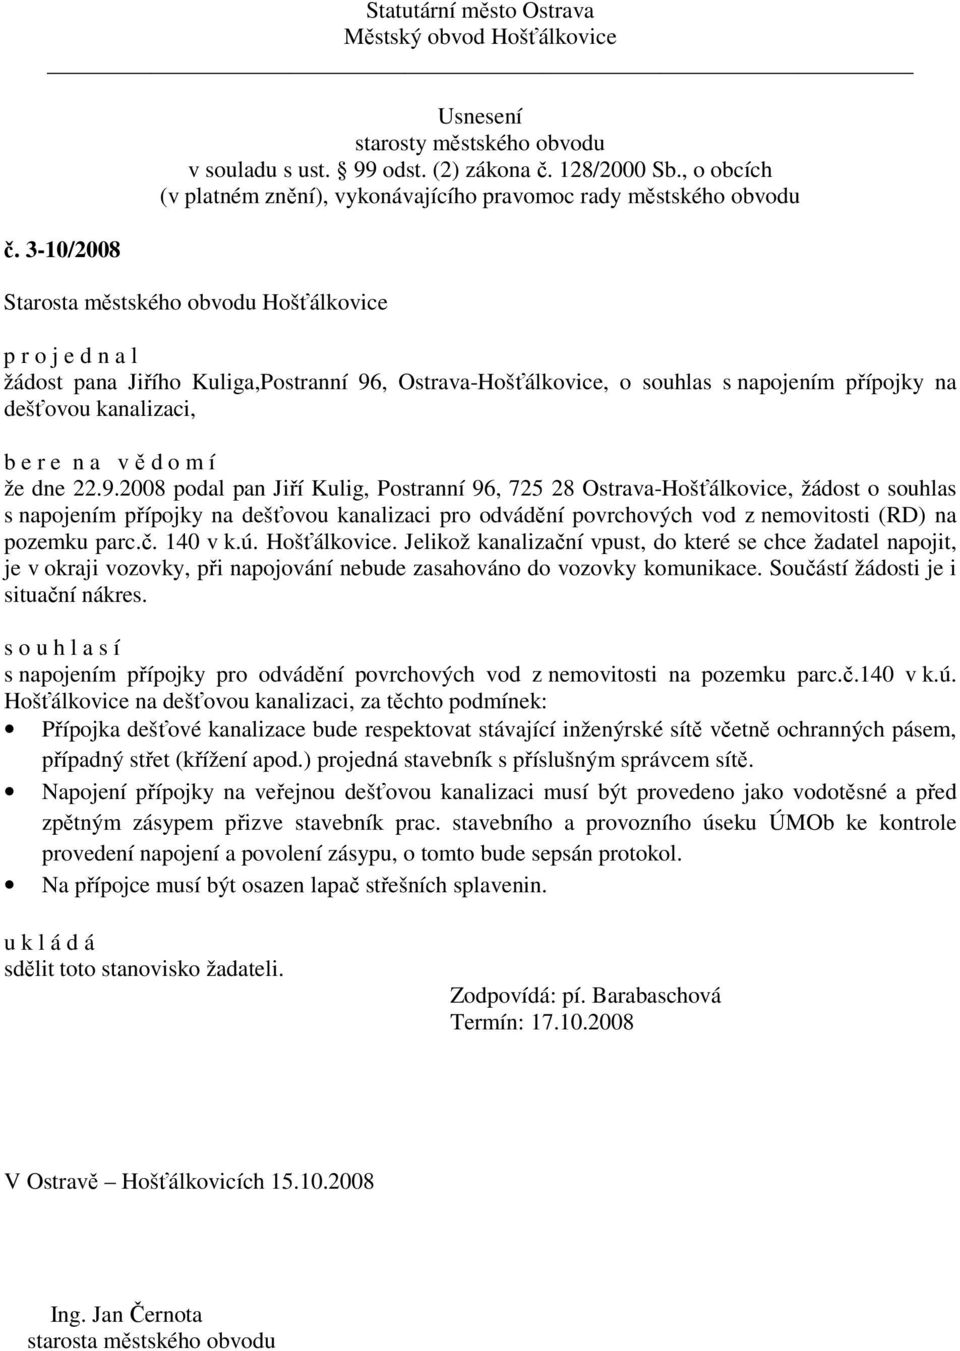 2008 podal pan Jiří Kulig, Postranní 96, 725 28 Ostrava-Hošťálkovice, žádost o souhlas s napojením přípojky na dešťovou kanalizaci pro odvádění povrchových vod z nemovitosti (RD) na pozemku parc.č.